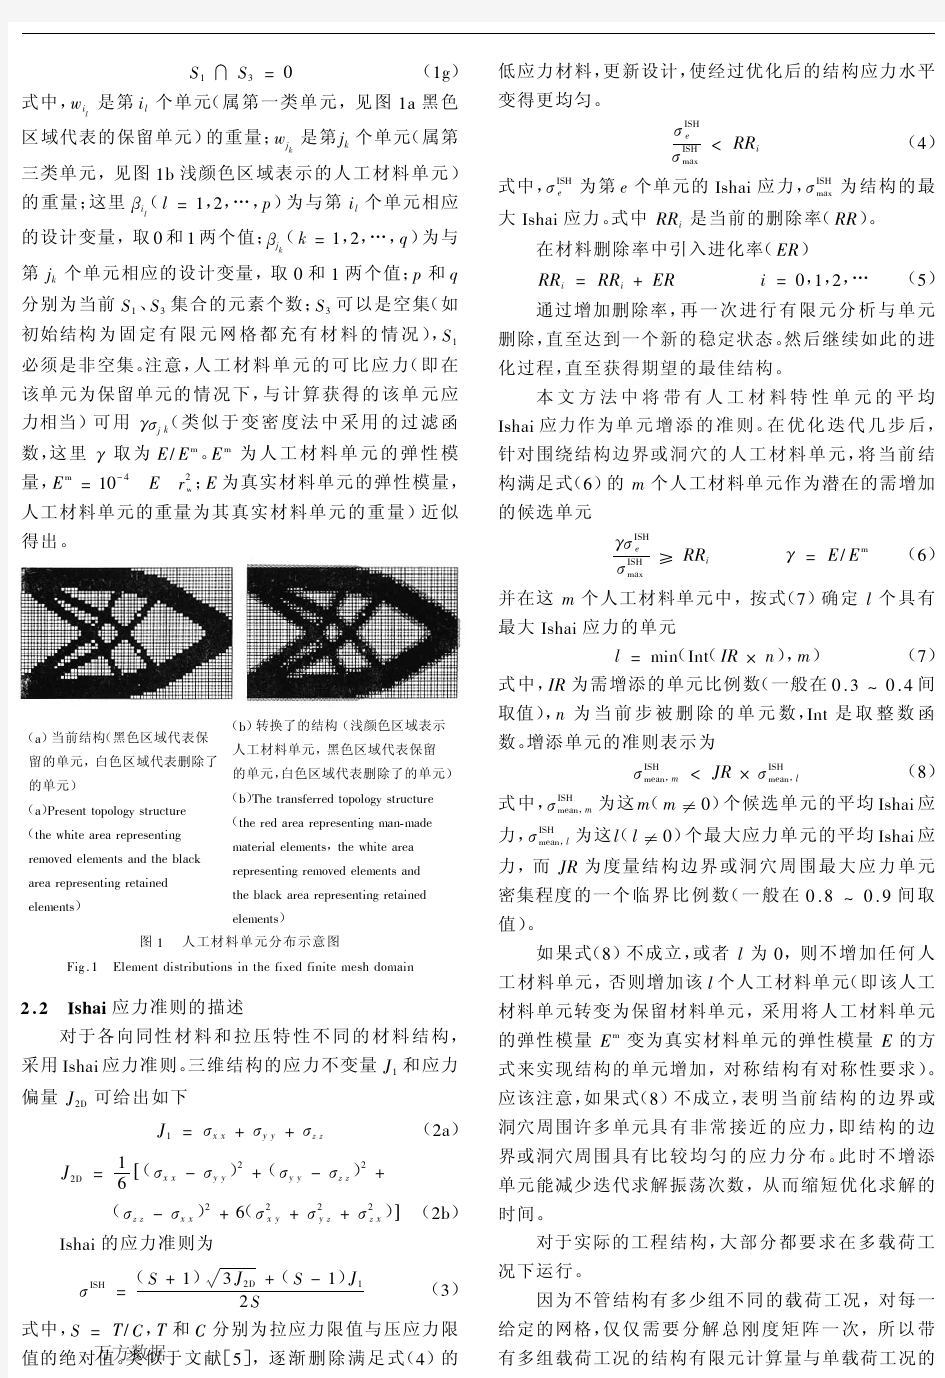 荣见华,傅建林.典型三维机械结构拓扑优化设计.机械强度, 2006, 28 (06) ：825-832